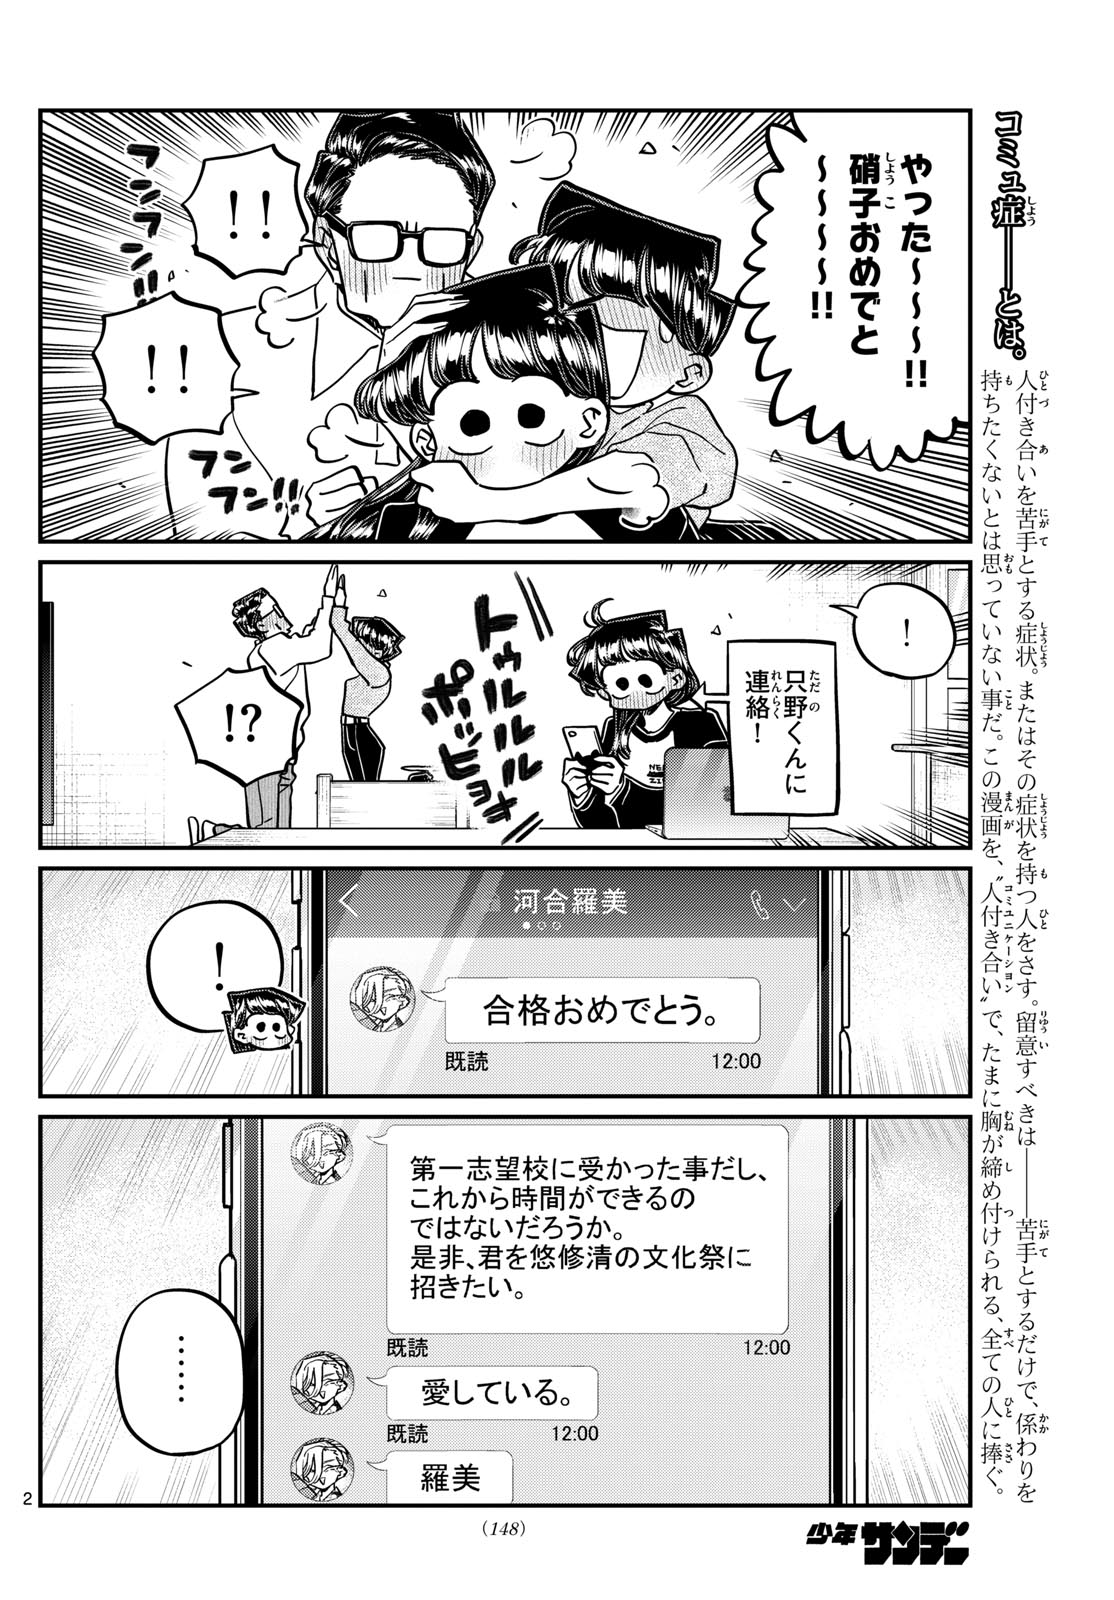 Komi-san wa Komyushou Desu - Chapter 446 - Page 2